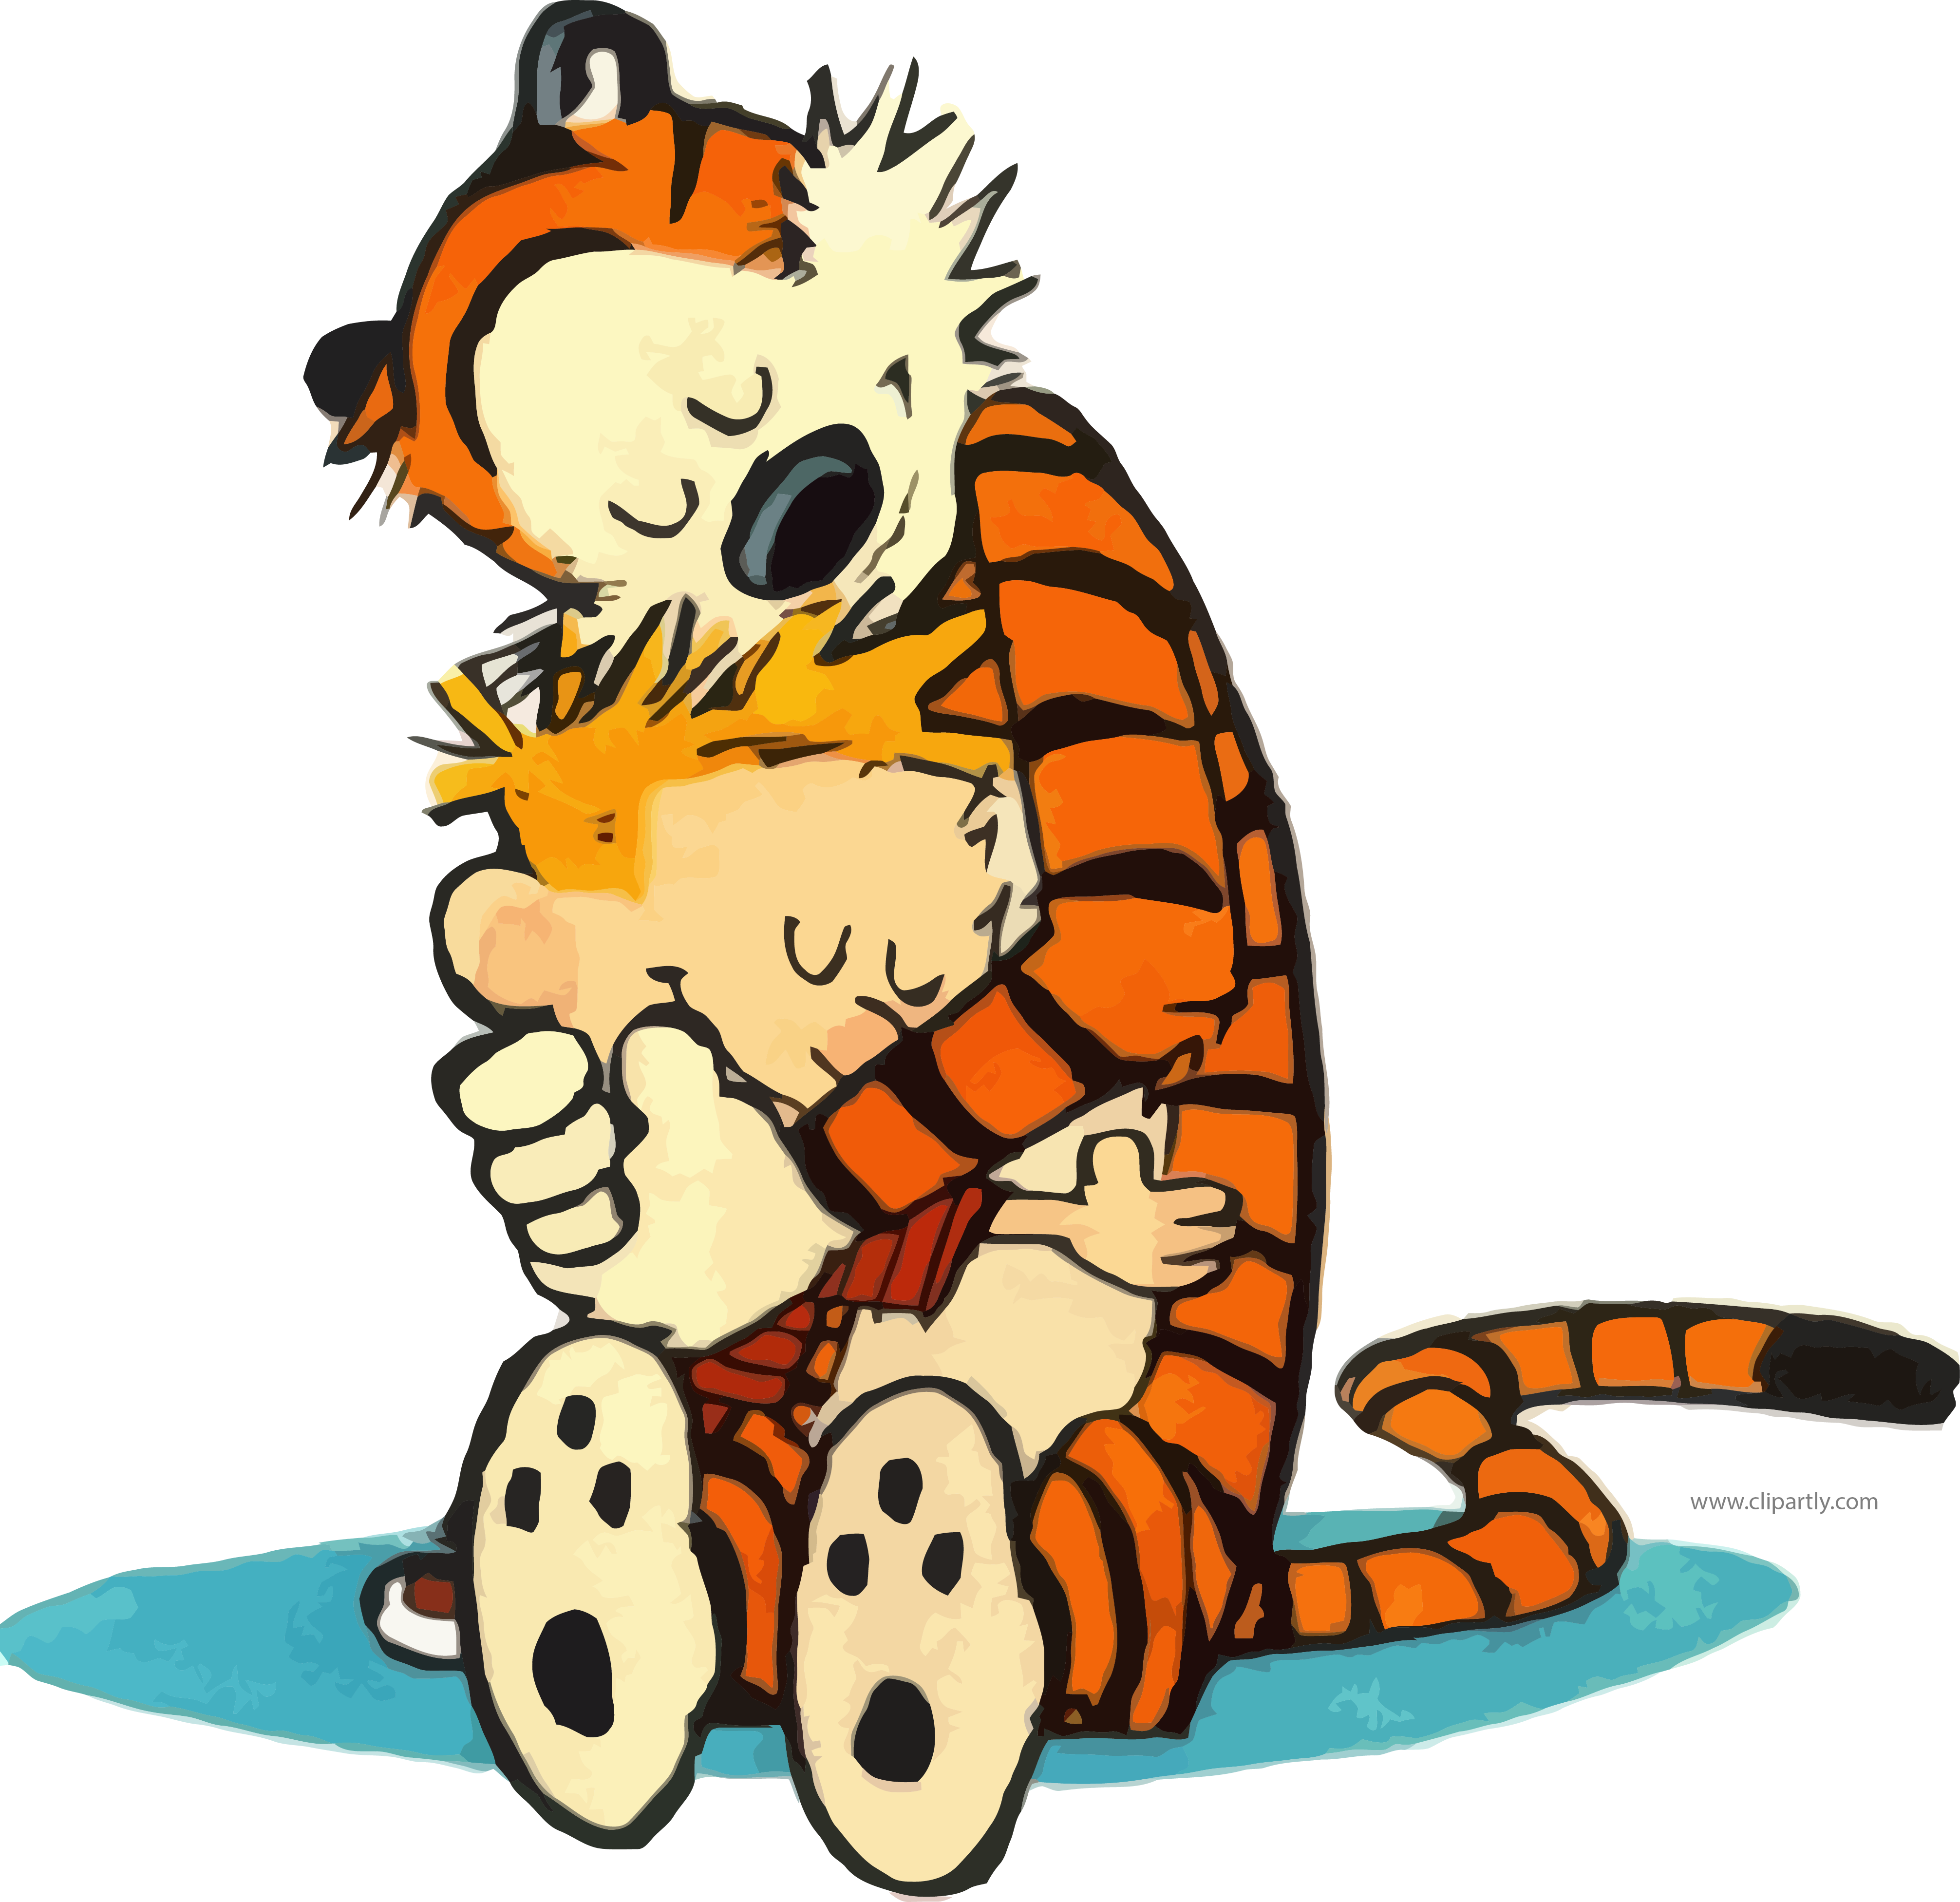 A Cartoon Of A Tiger Hugging A Boy